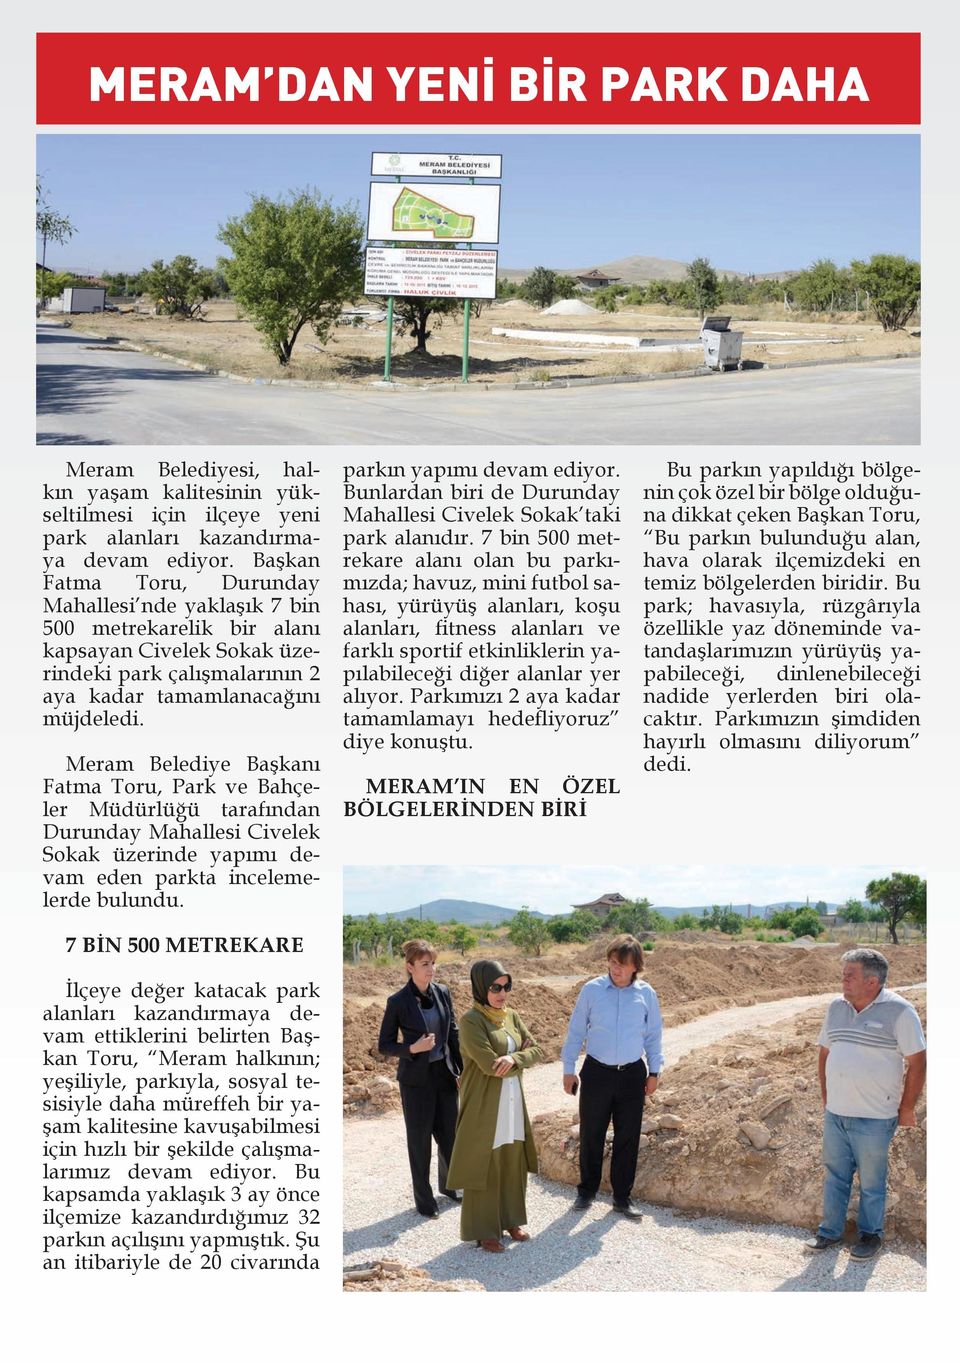 Meram Belediye Başkanı Fatma Toru, Park ve Bahçeler Müdürlüğü tarafından Durunday Mahallesi Civelek Sokak üzerinde yapımı devam eden parkta incelemelerde bulundu.